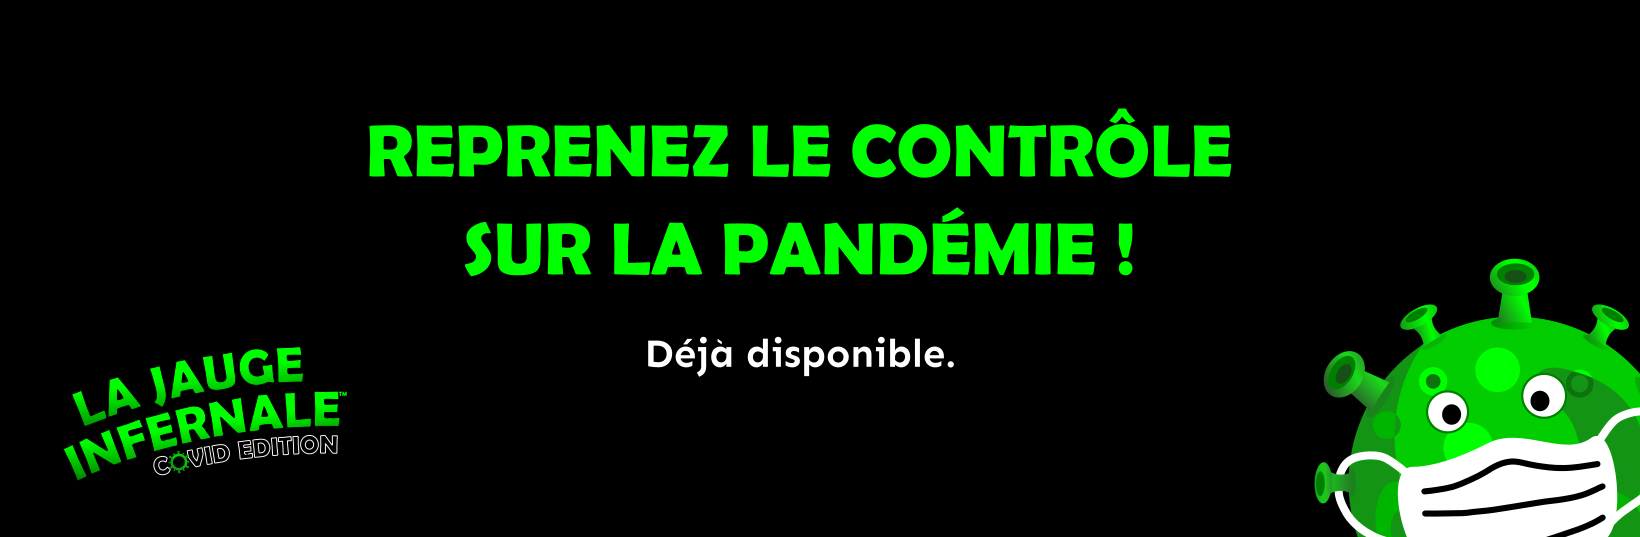 Reprenez le contrôle sur la pandémie La Jauge Infernale : Covid Edition Opsylon Games